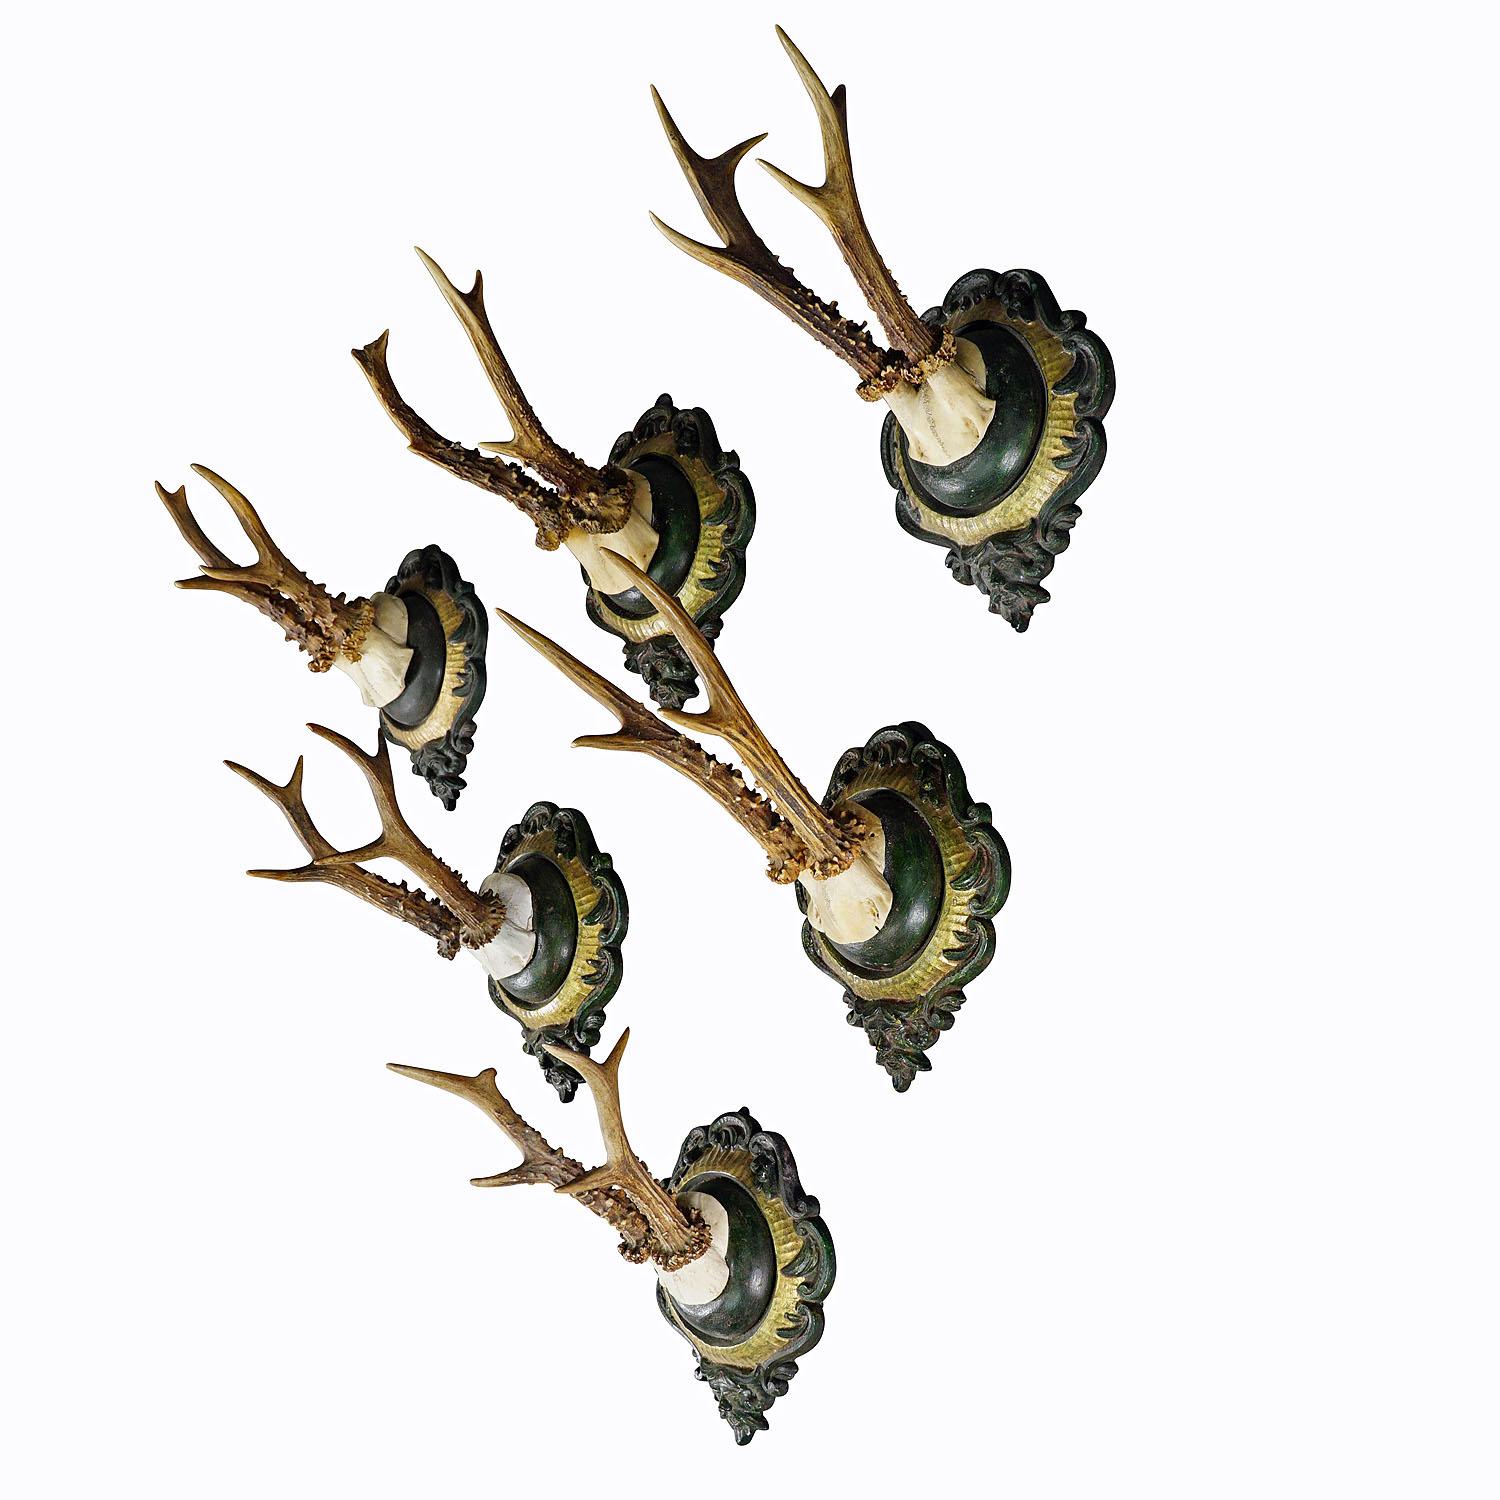 Sechs große Vintage Hirschtrophäen auf Gipstafeln Deutschland ca. 1960er Jahre

Ein Satz von sechs großen Schwarzwaldhirschtrophäen (Capreolus capreolus), montiert auf gegossenen Gipsplaketten. Die Plaketten mit grüner und vergoldeter Oberfläche